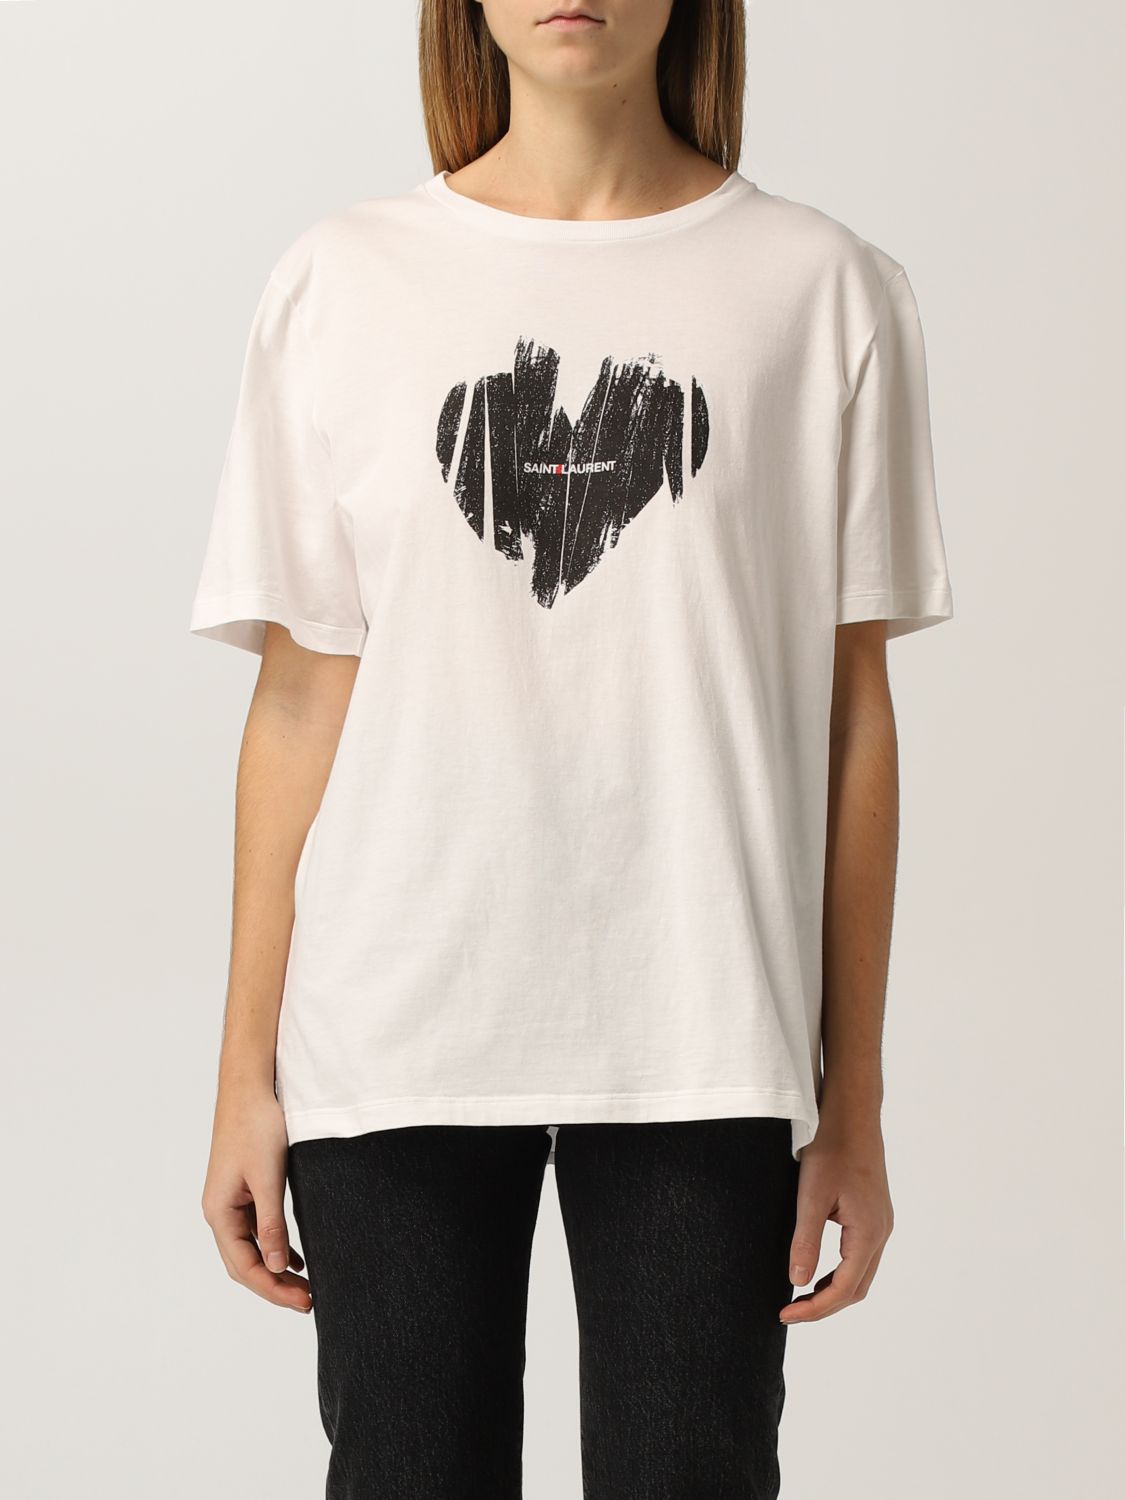 T-Shirt Saint Laurent: Saint Laurent cotton t-shirt with print yellow cream 1